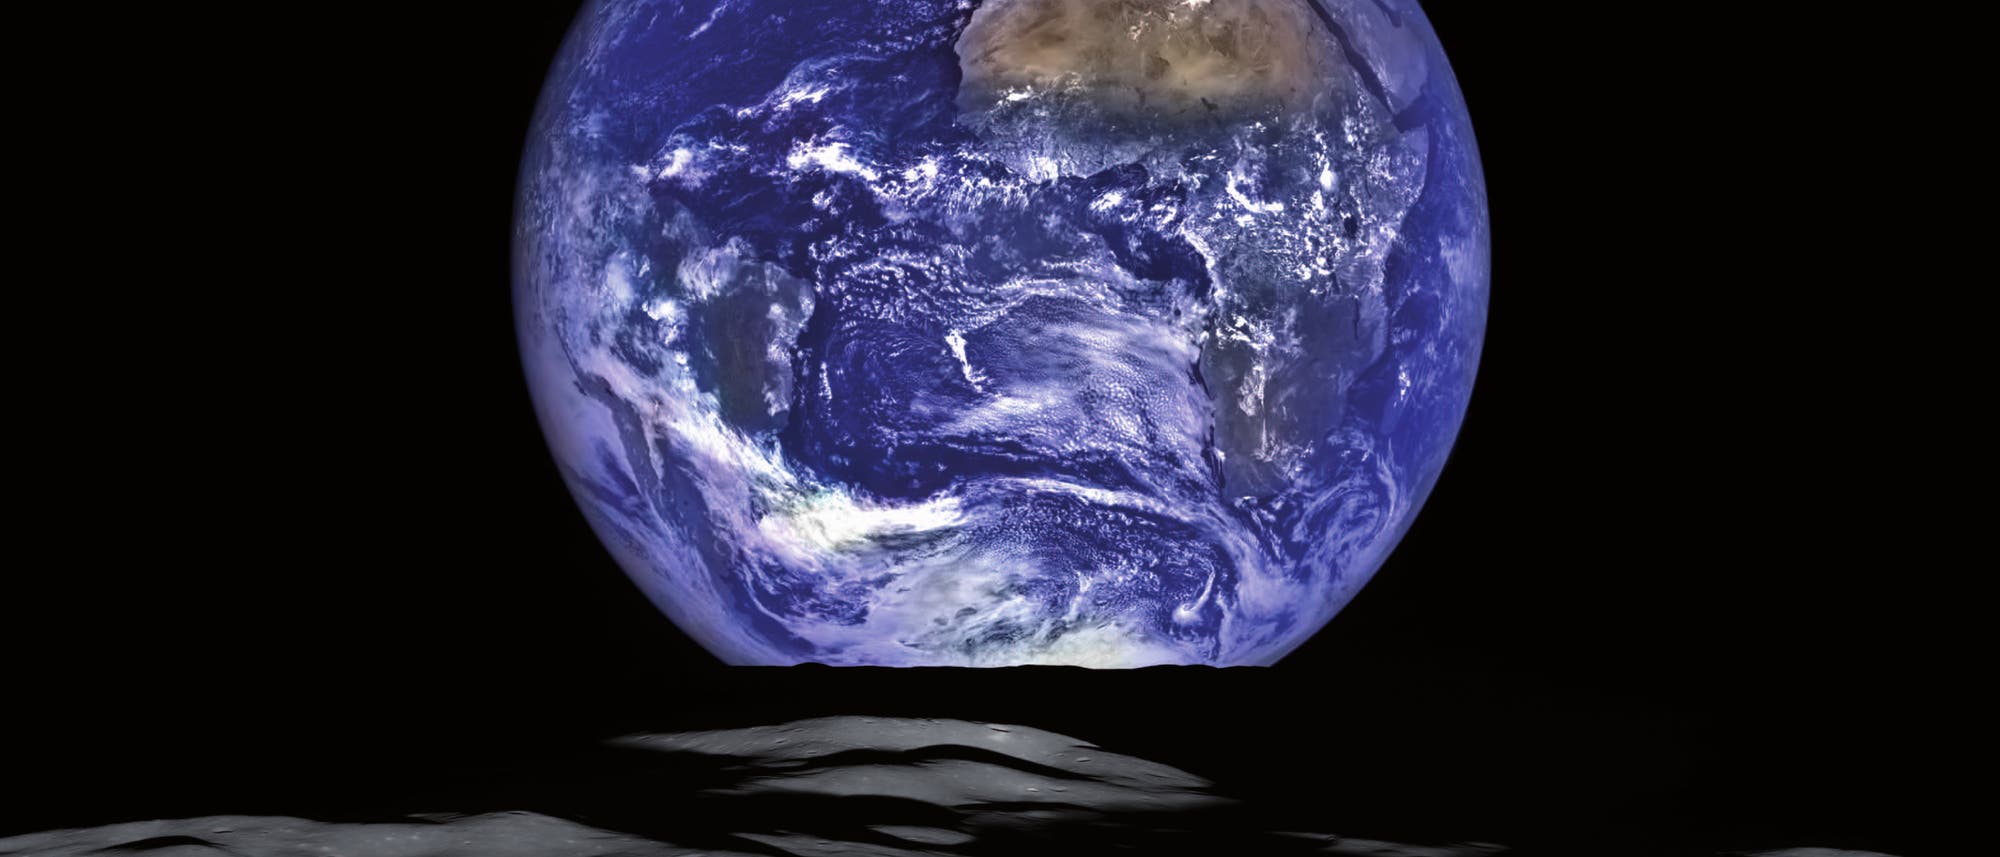 Erdaufgang über dem Mondhorizont (Lunar Reconnaissance Orbiter)